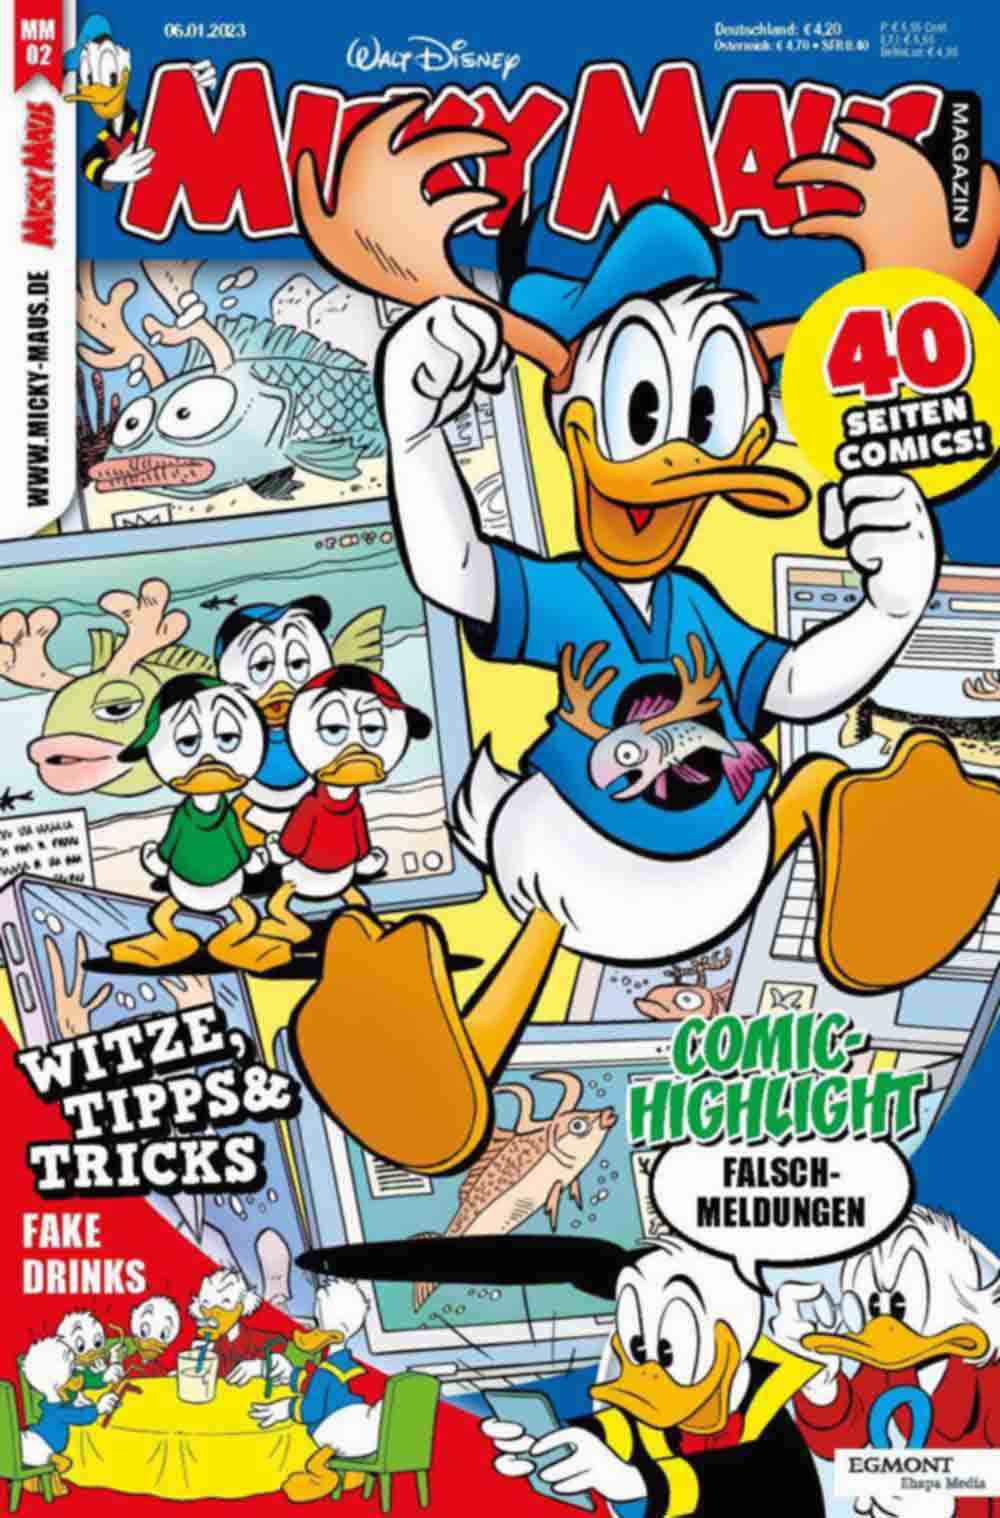 Das Micky Maus Magazin sucht einen Junior Chefredakteur